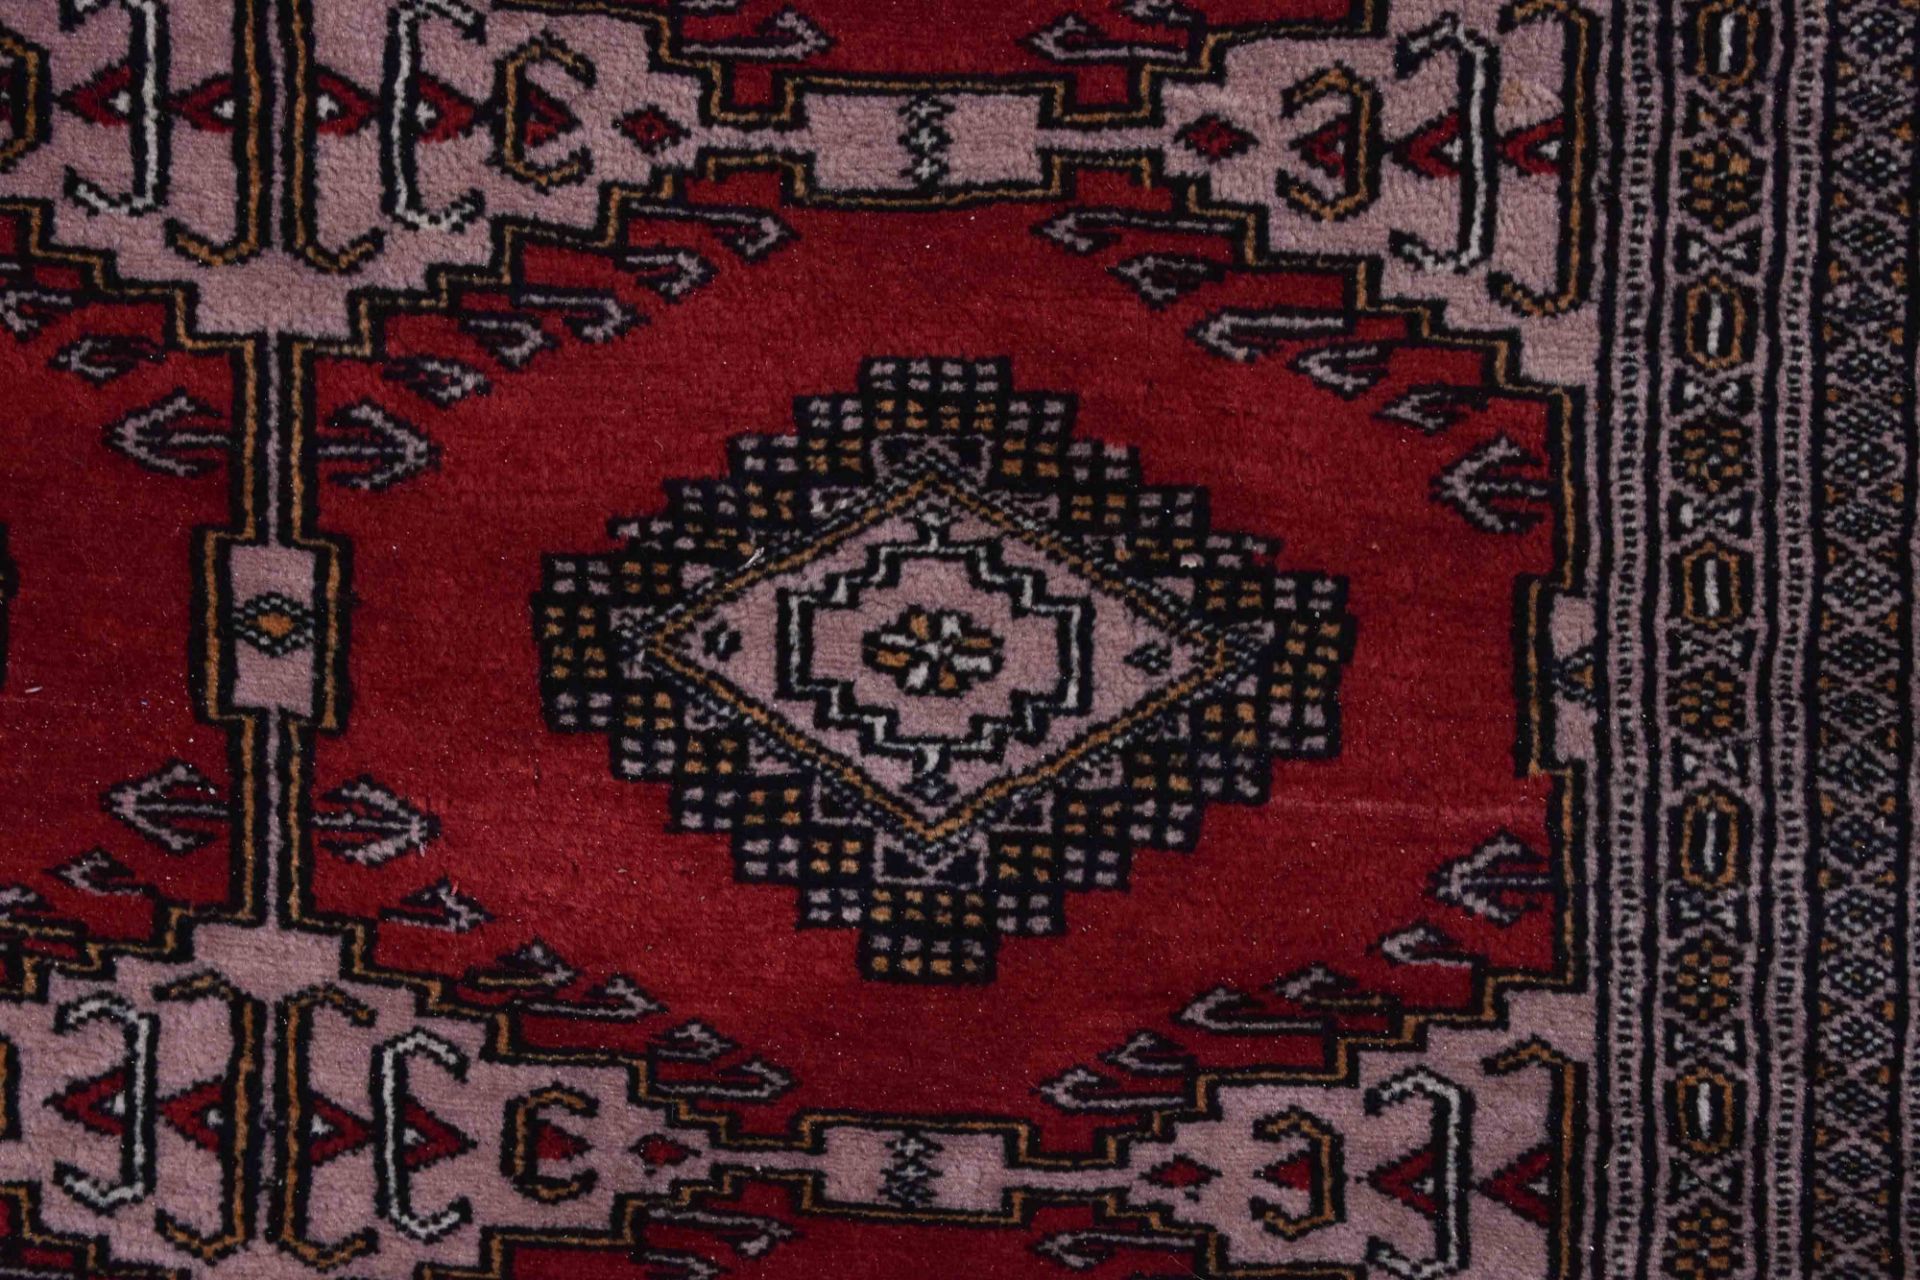 Alter Orientalischer Teppich197 cm x 128 cmOld oriental carpet197 cm x 128 cm - Bild 3 aus 4